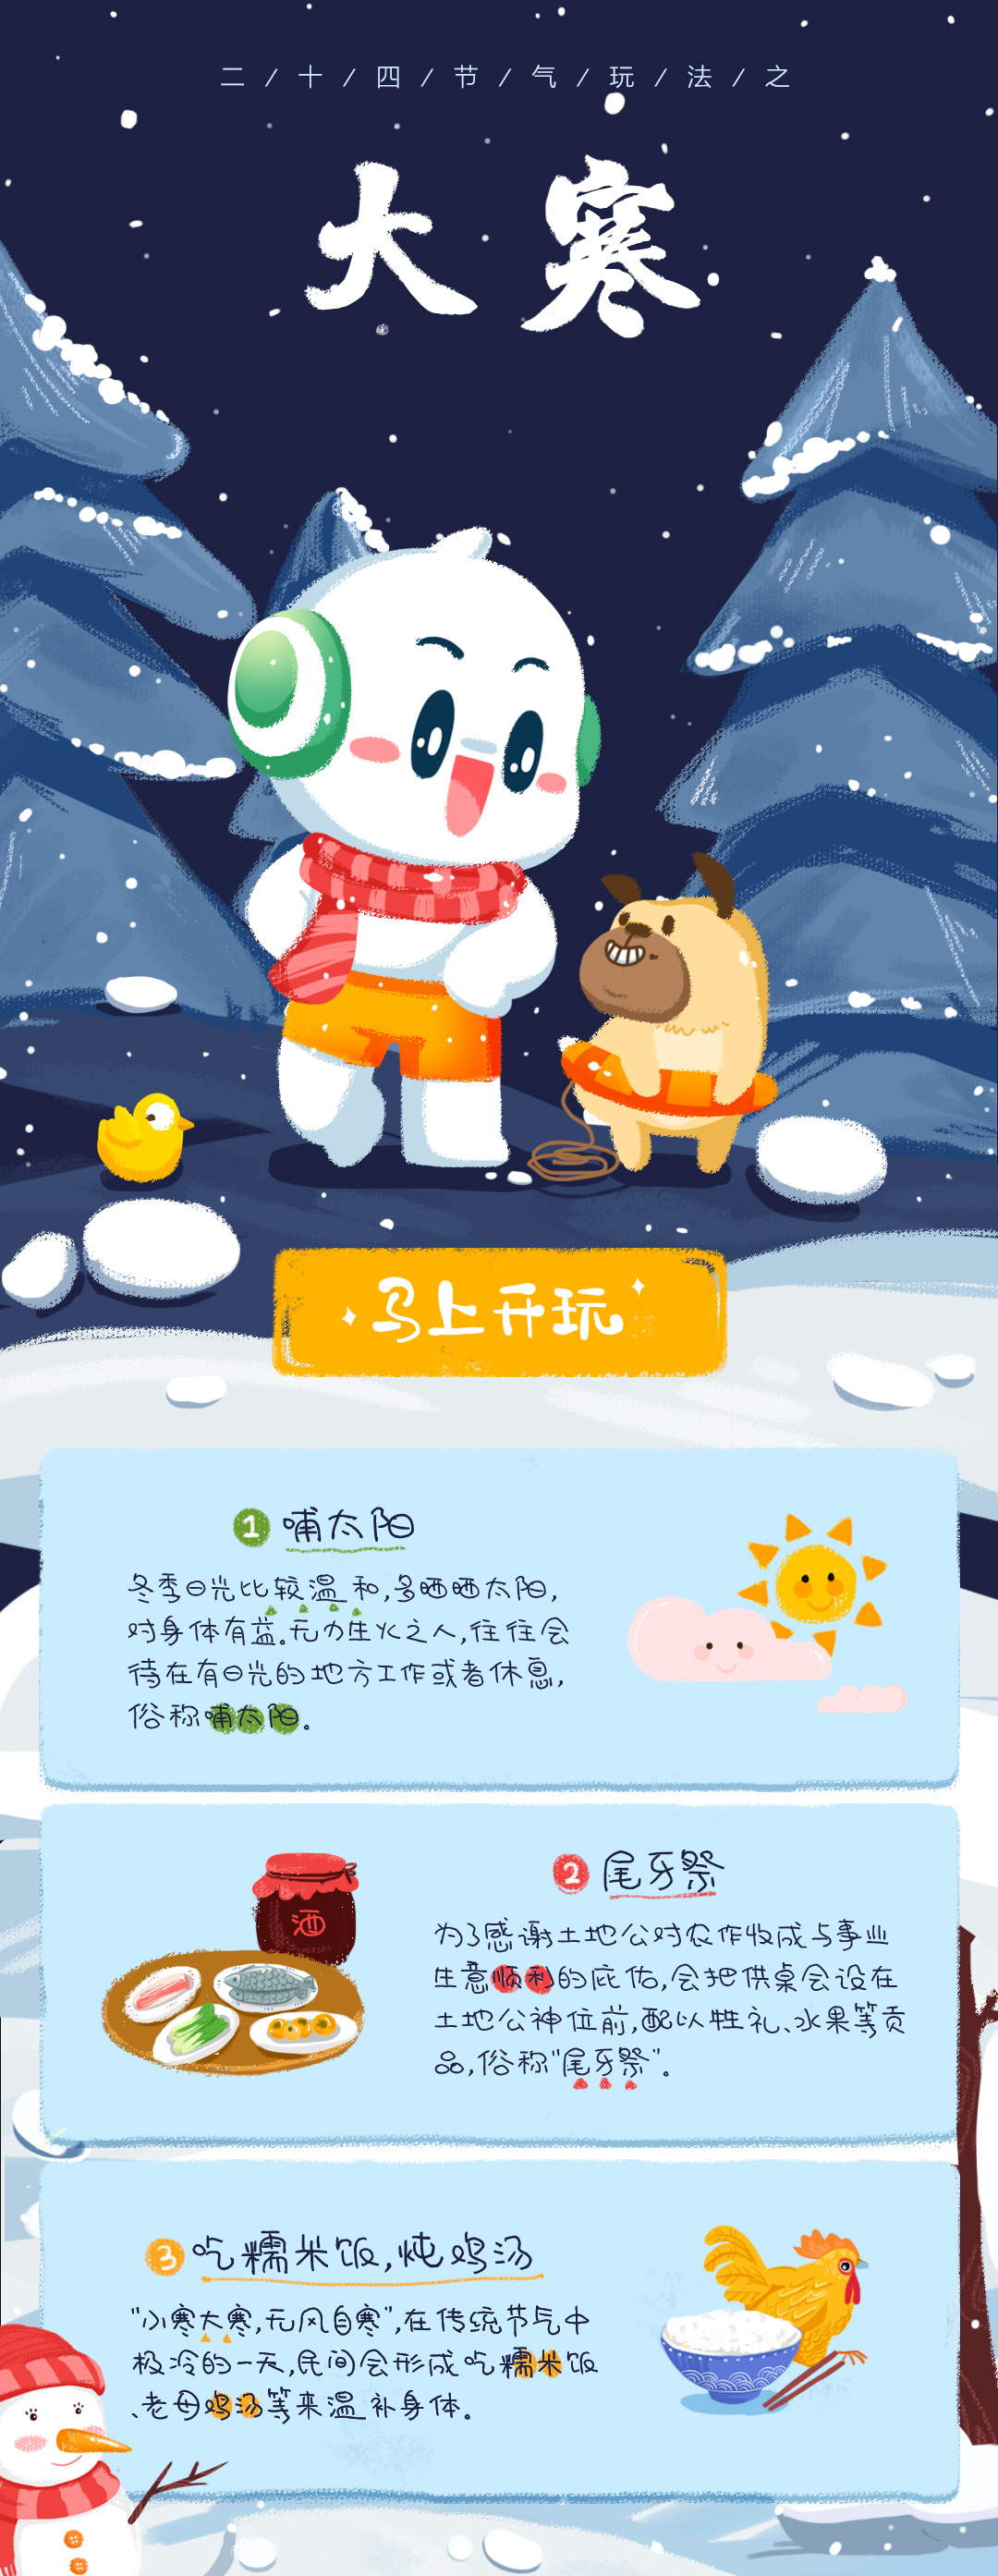 下大雪了好冷抱猫咪取暖插画图片-千库网